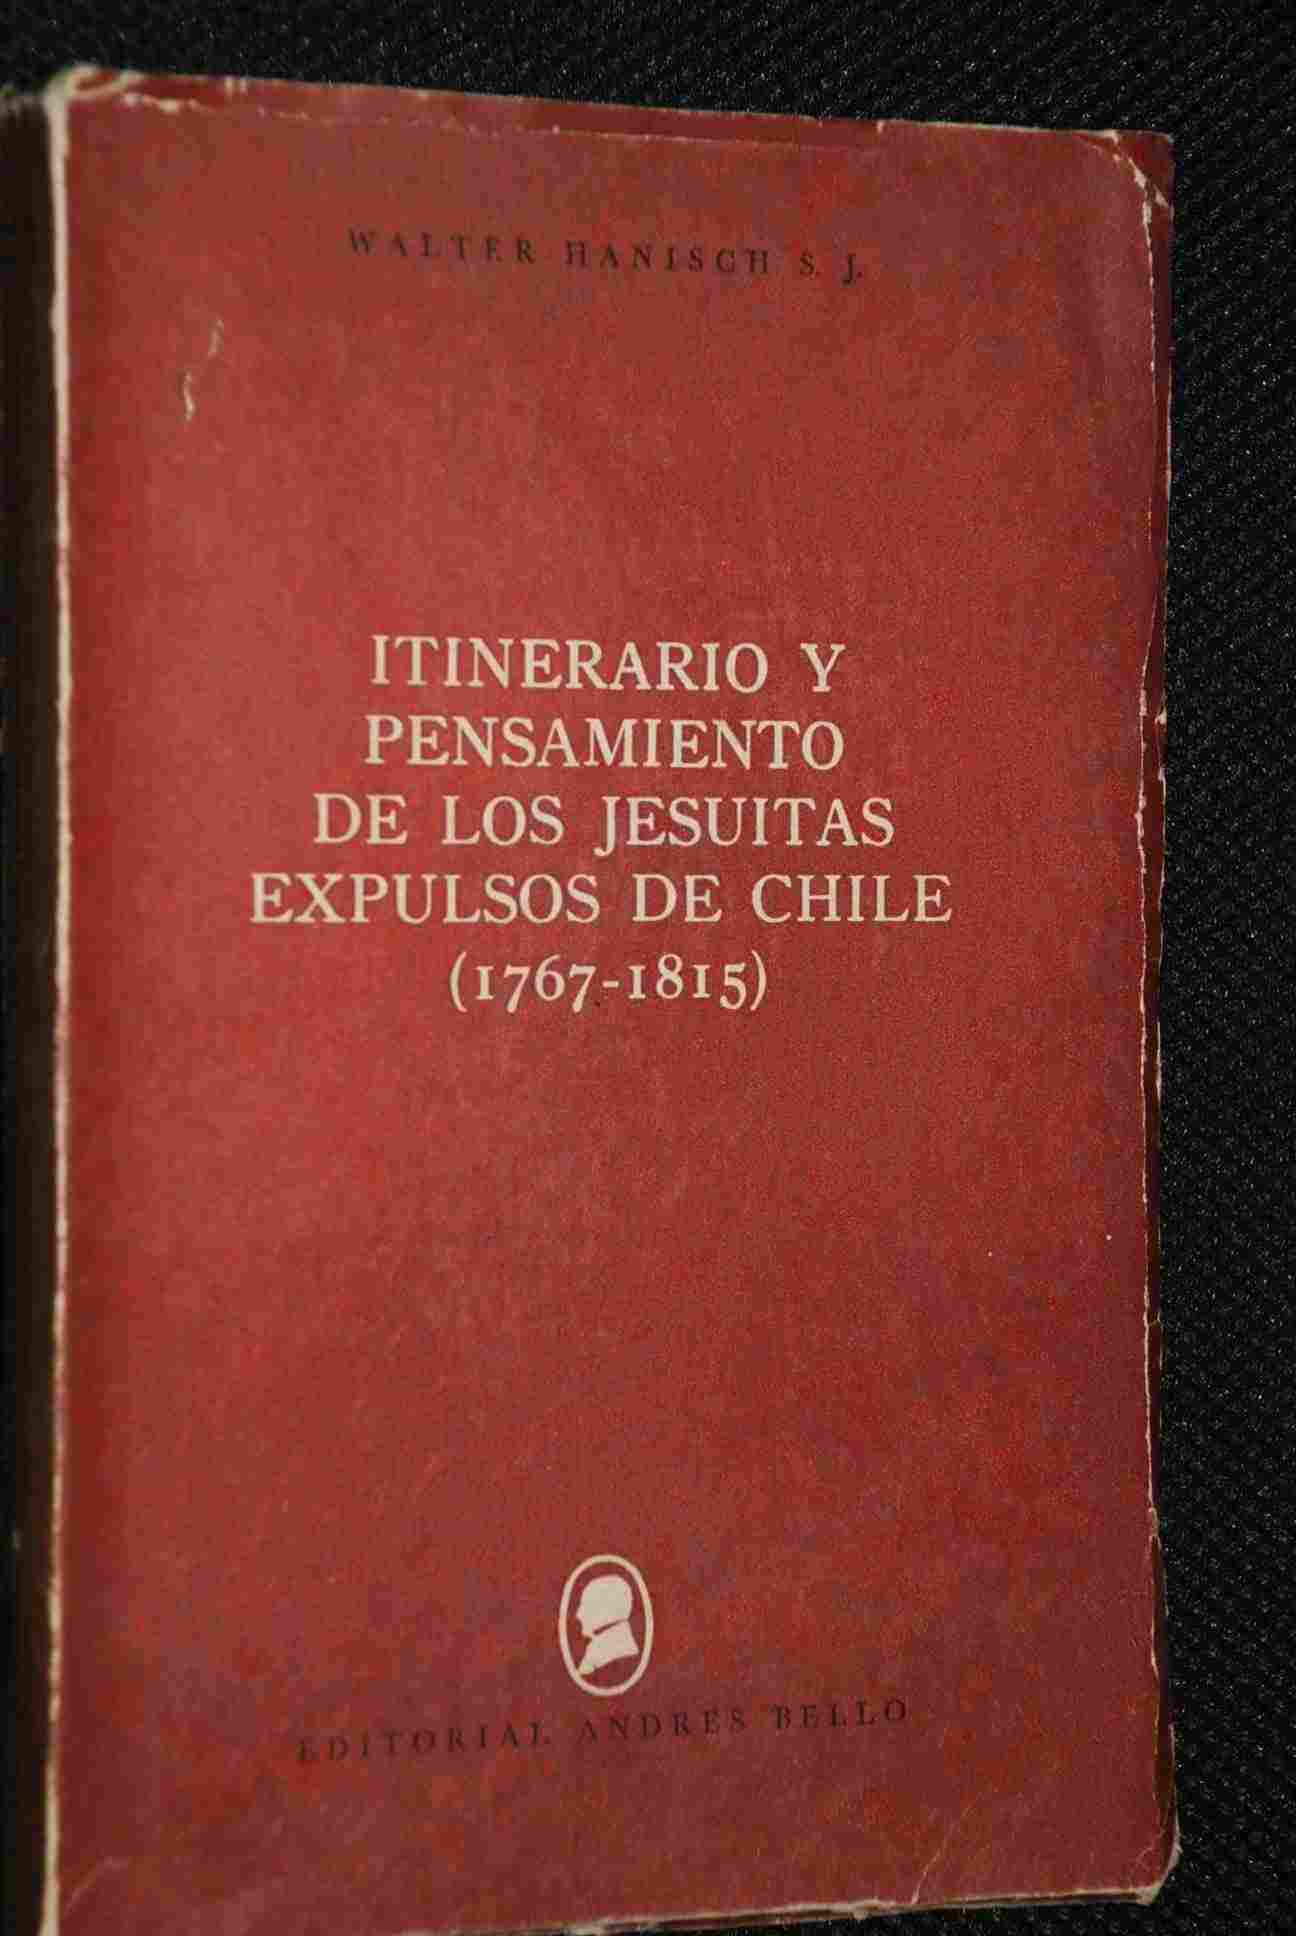 Walter Hanisch - Itinerario y pensamiento de los jesuítas expulsos de Chile : 1767-1815 